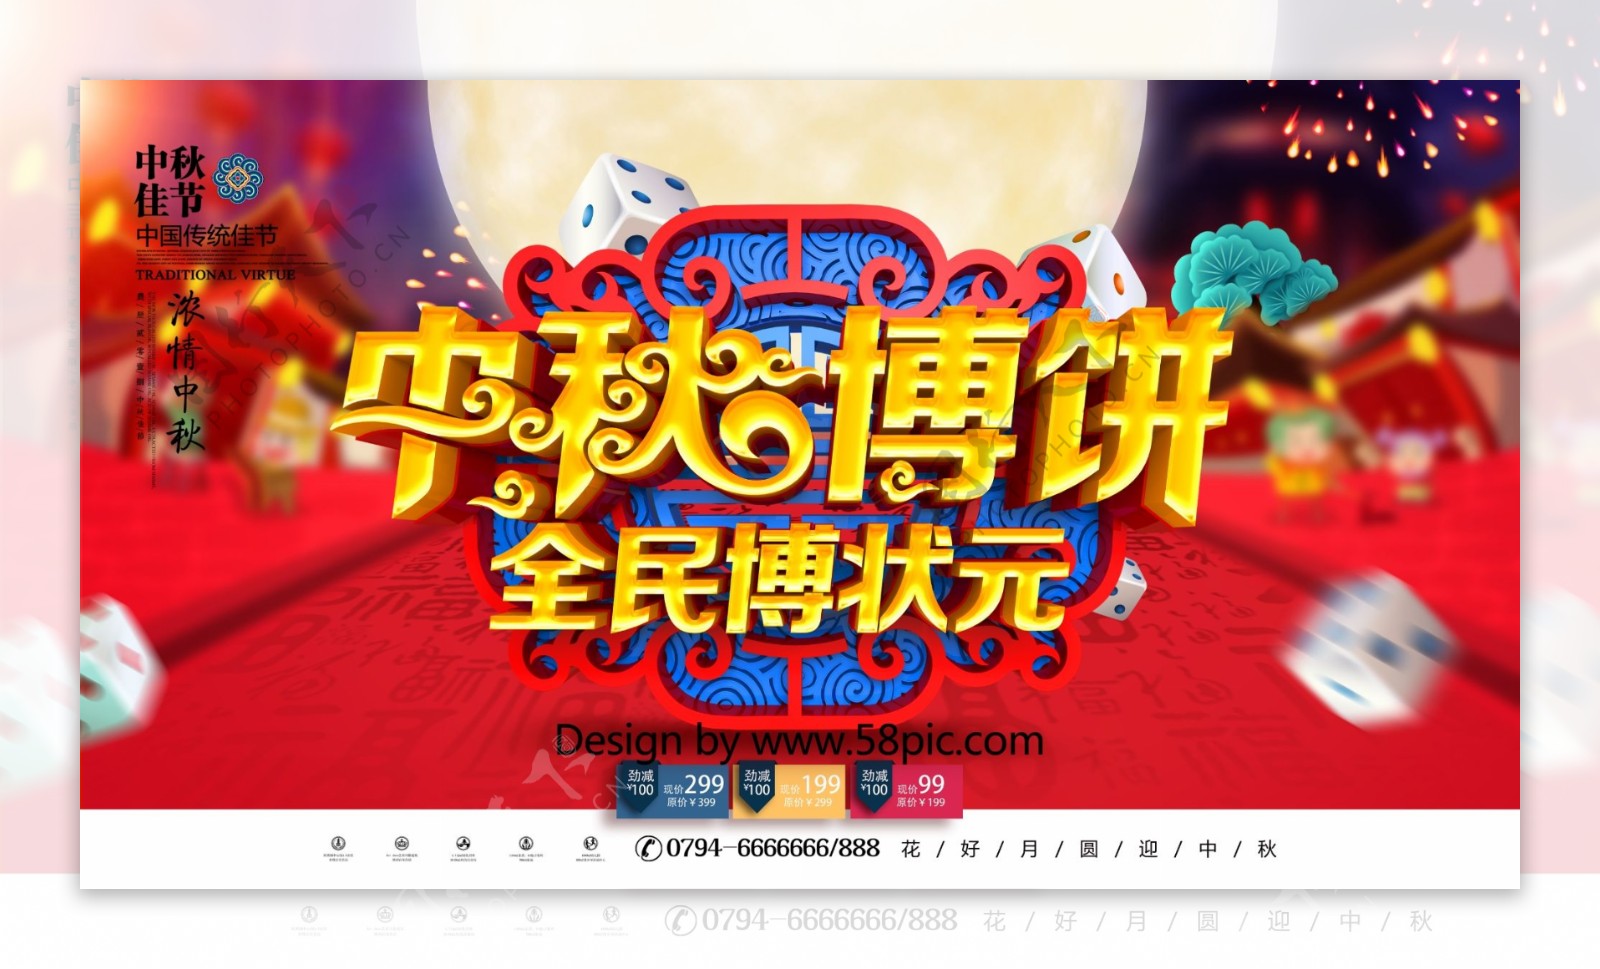 C4D创意中国风立体中秋博饼博饼宣传展板